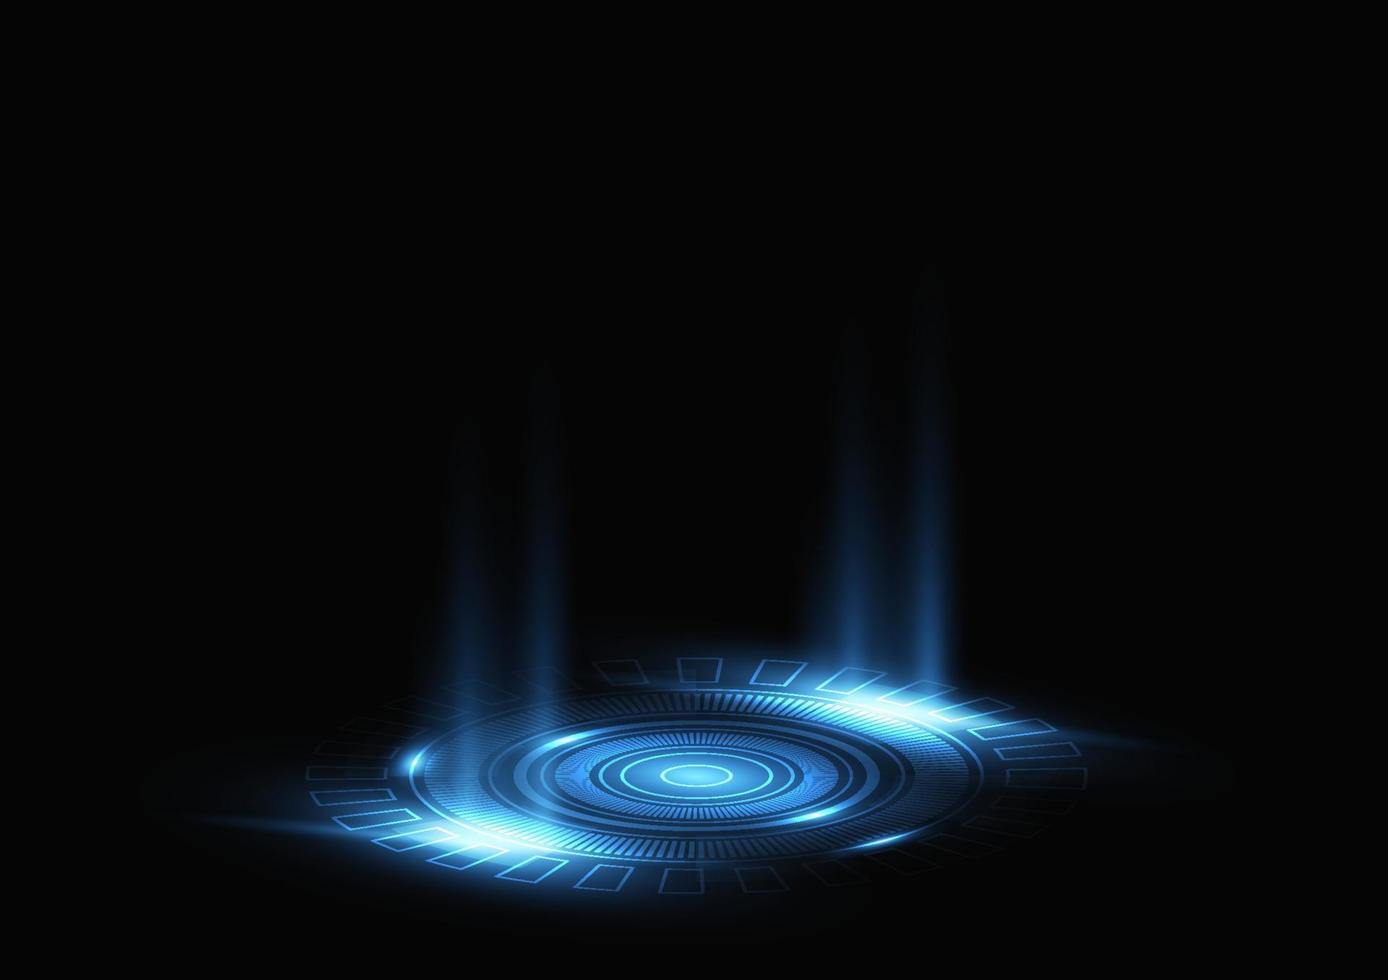 Ringtechnologie Neonlicht futuristisch auf schwarzem Hintergrund vektor